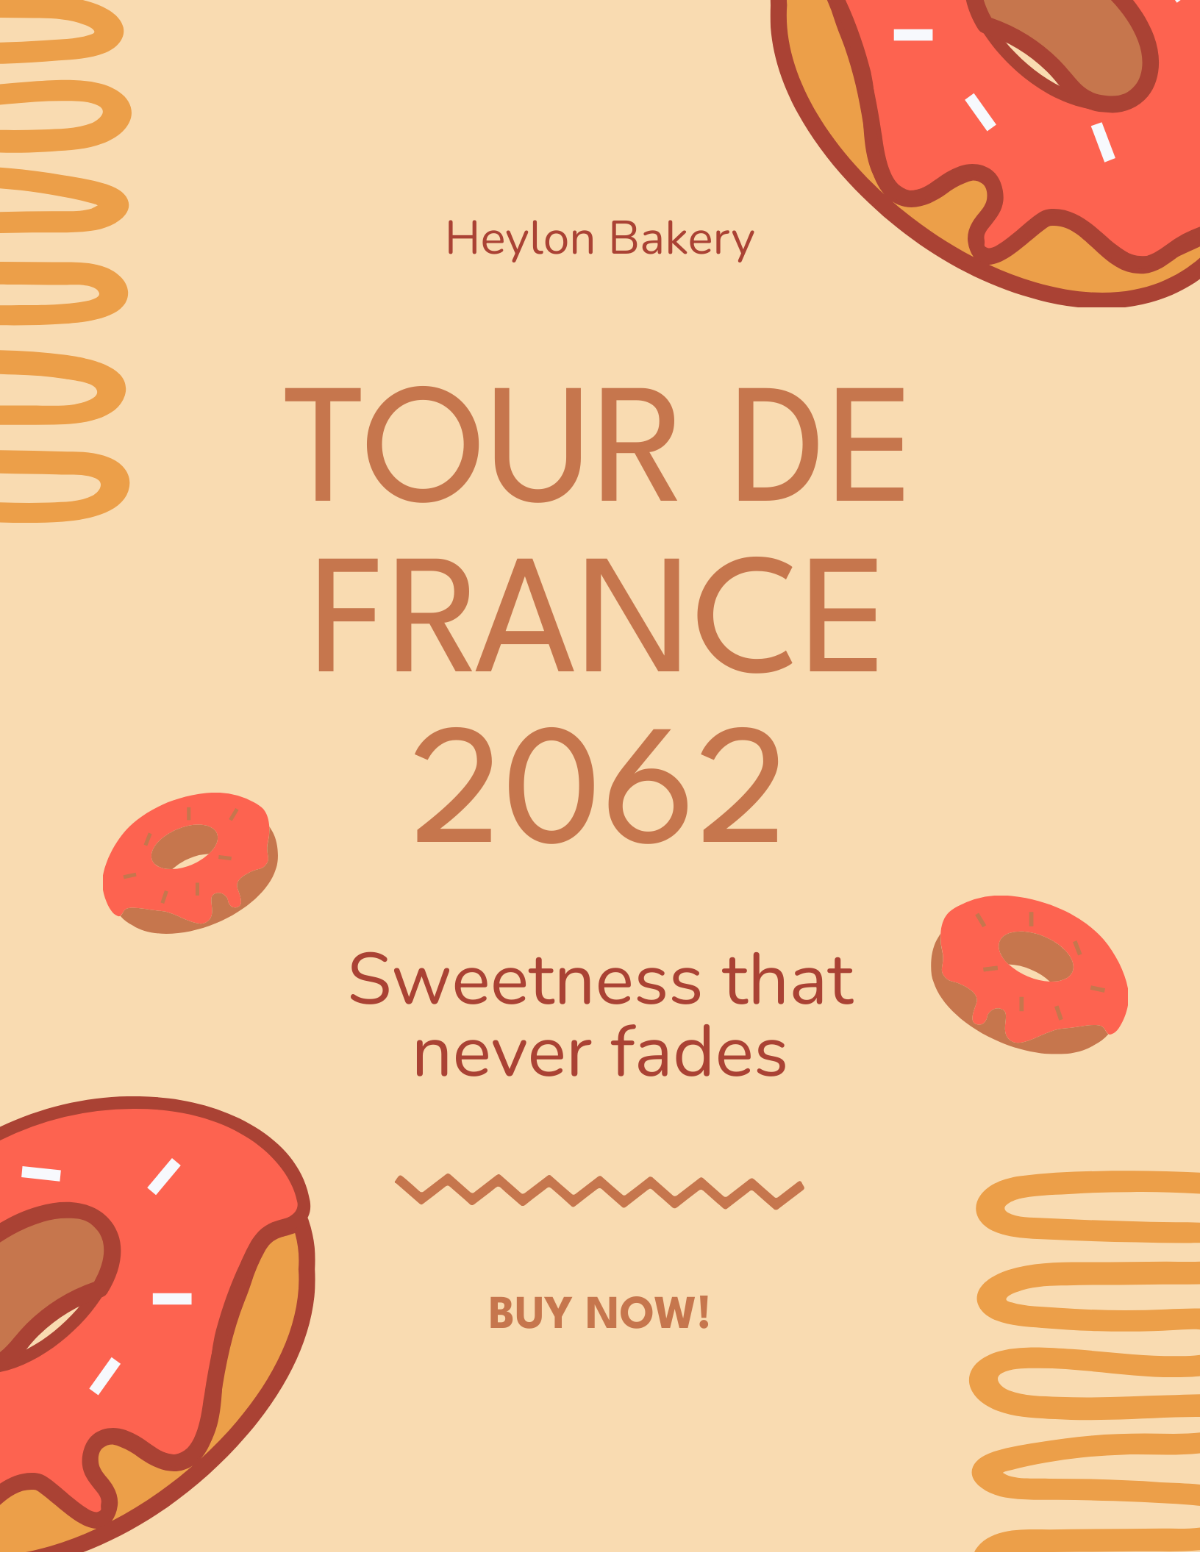 Vintage Tour De France Flyer Template